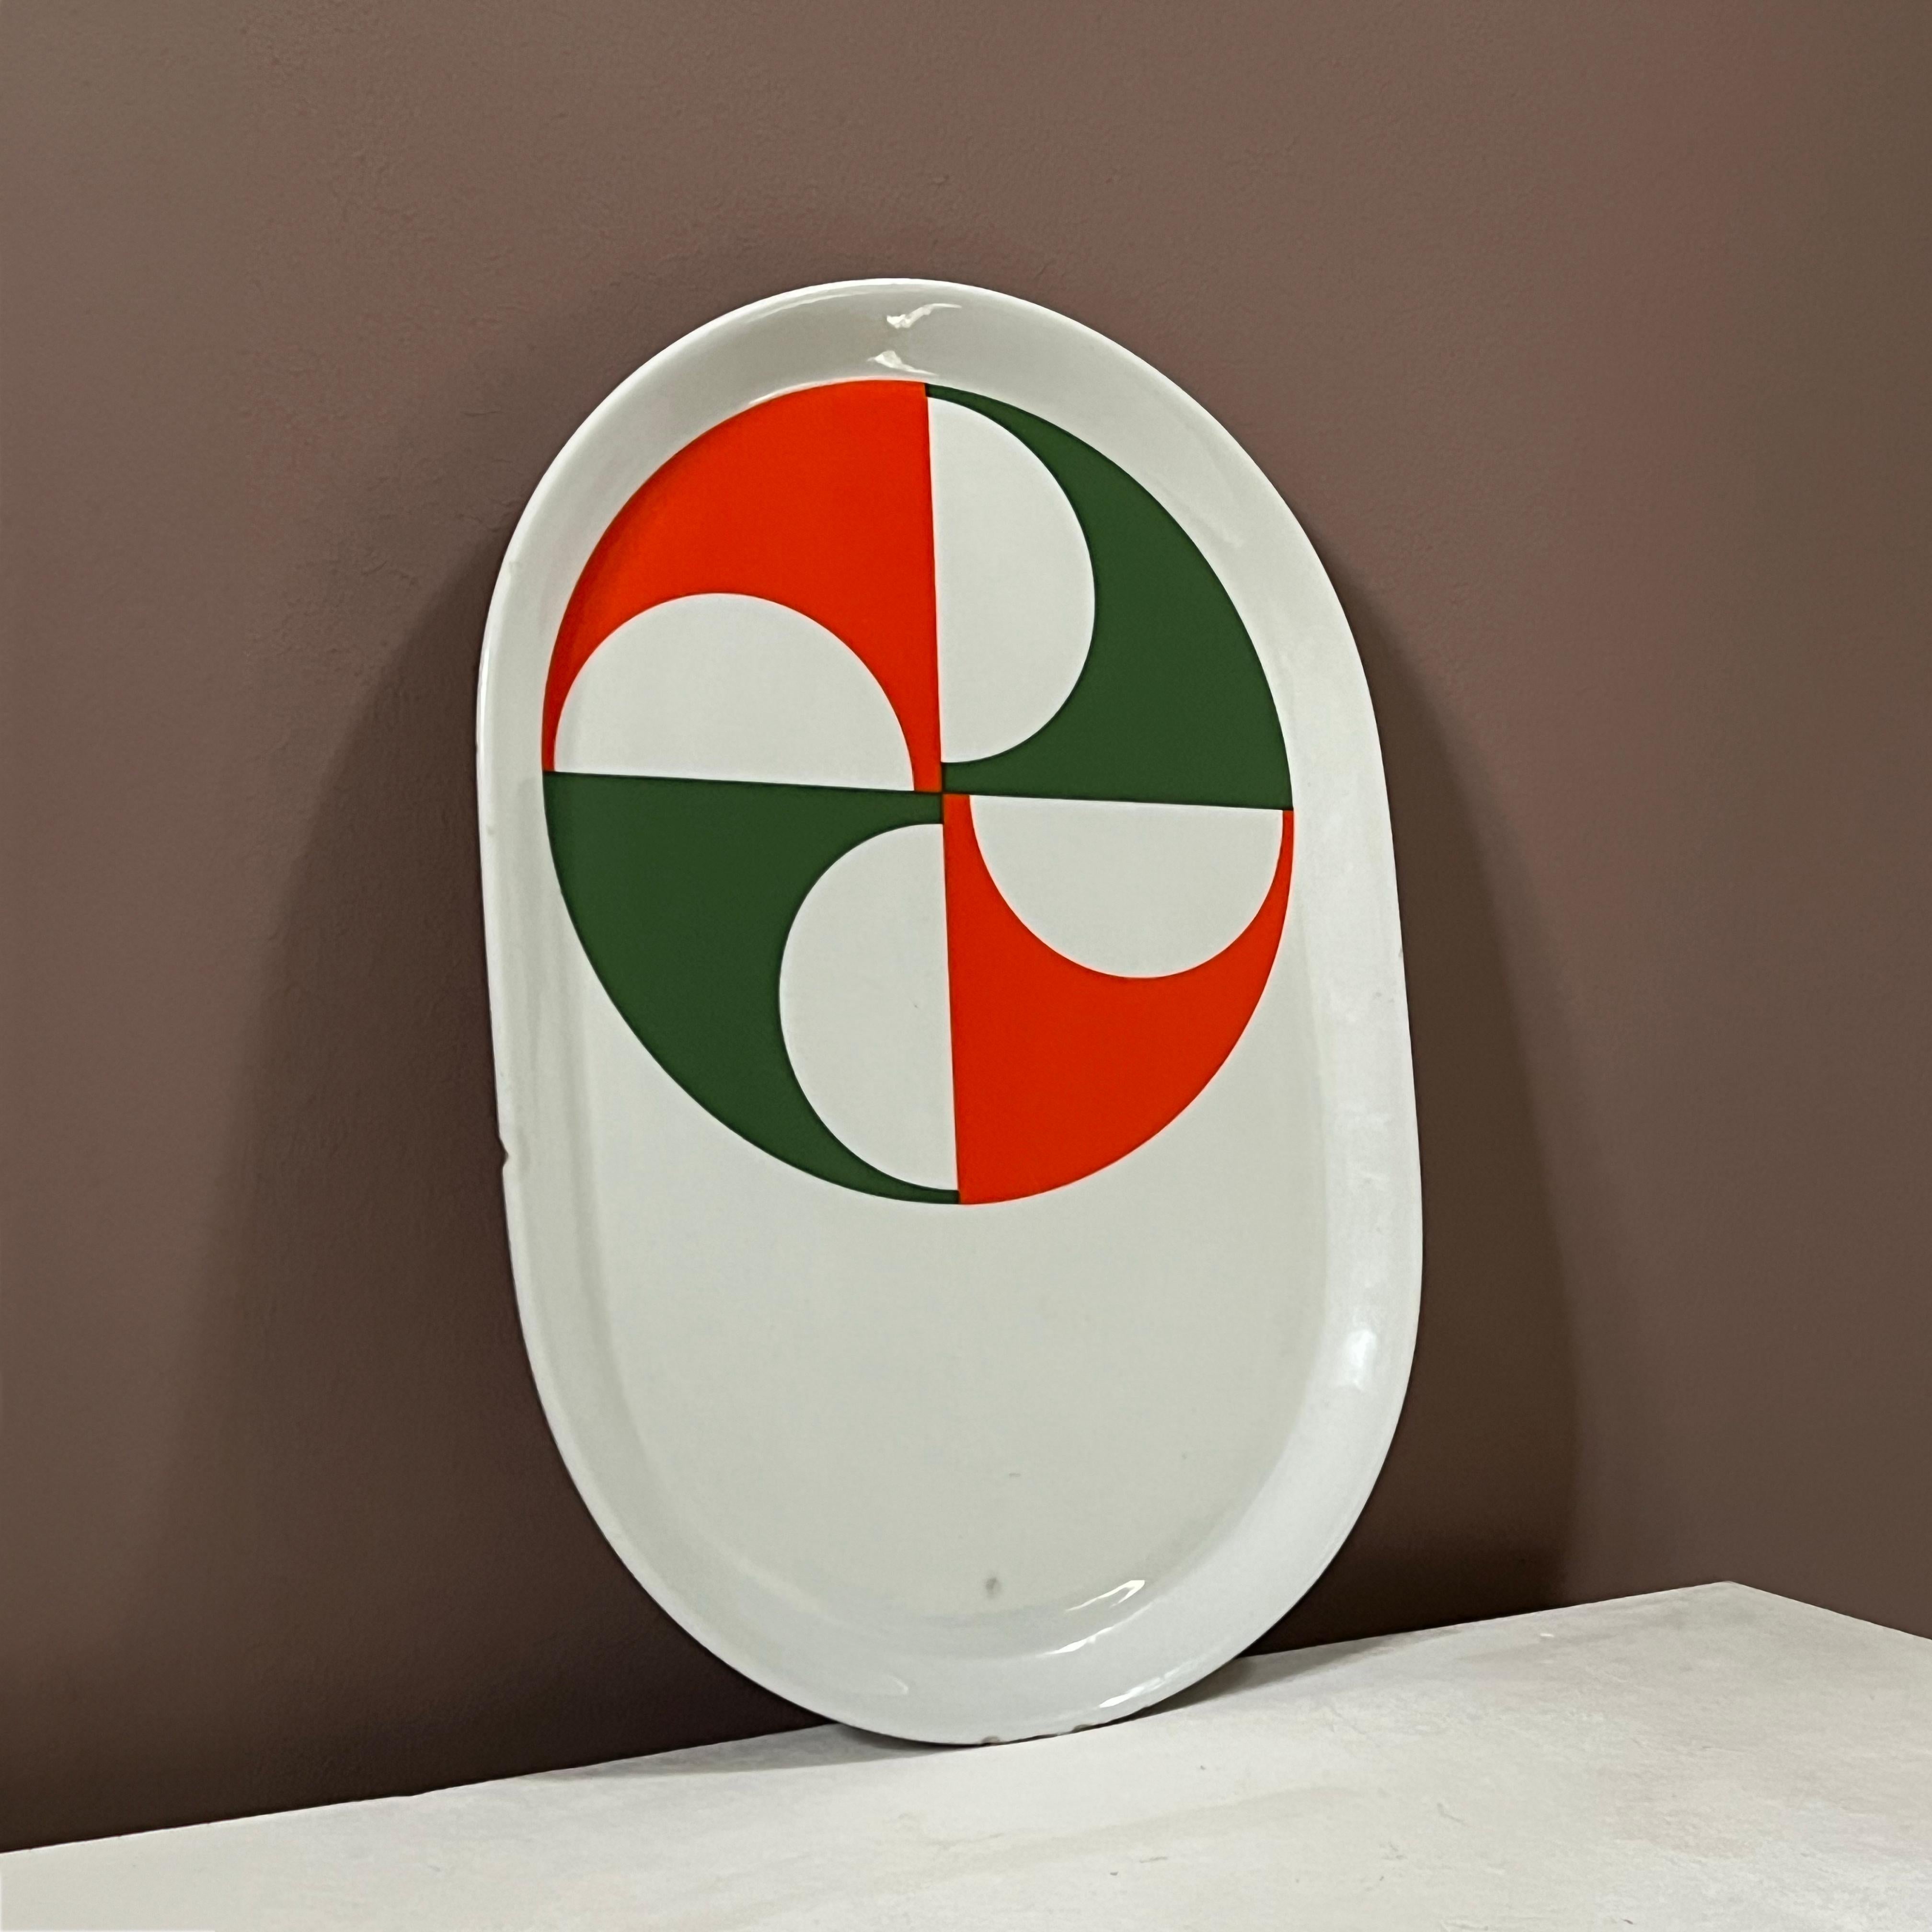 Diese Servierplatte, die in den 1960er Jahren von Ceramiche Franco Pozzi in Italien hergestellt wurde, ist Teil der erneuerten Kollektion Fantasia Italiana